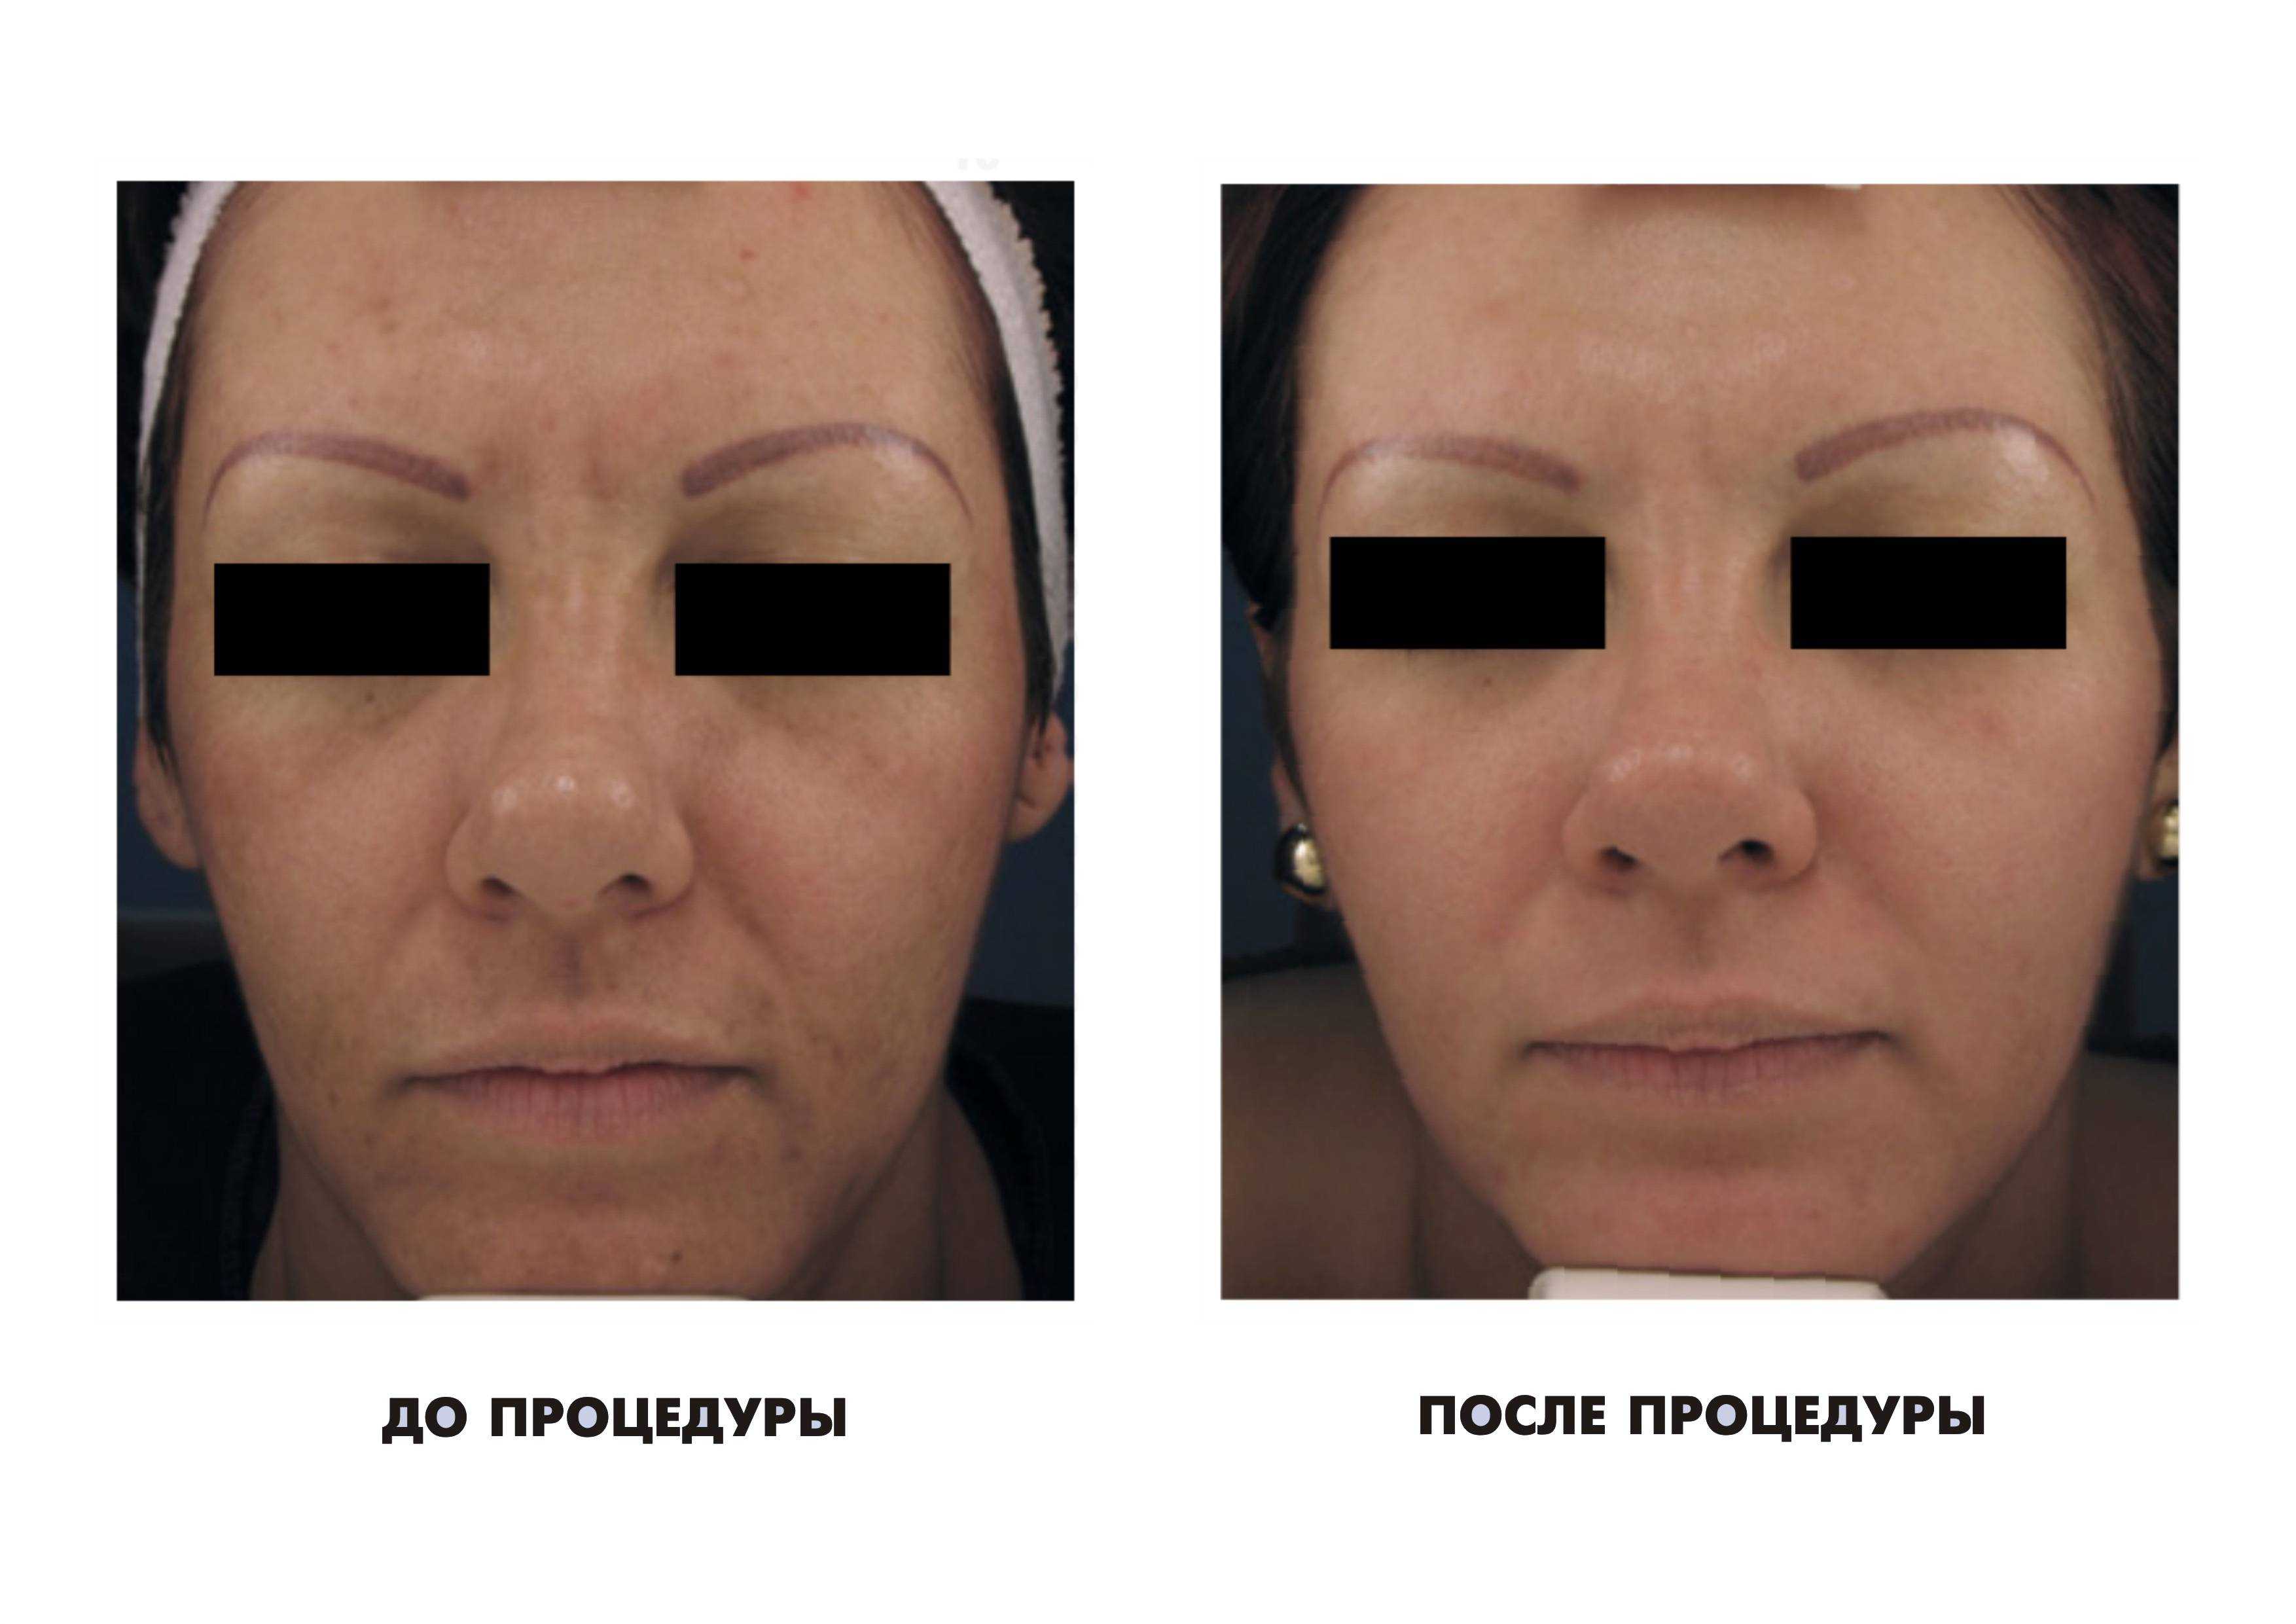 Люмека отзывы. Фотоомоложение лица. Процедура фотоомоложения лица. Фотоомоложение лица до и после. Лицо после фотоомоложения до и после.